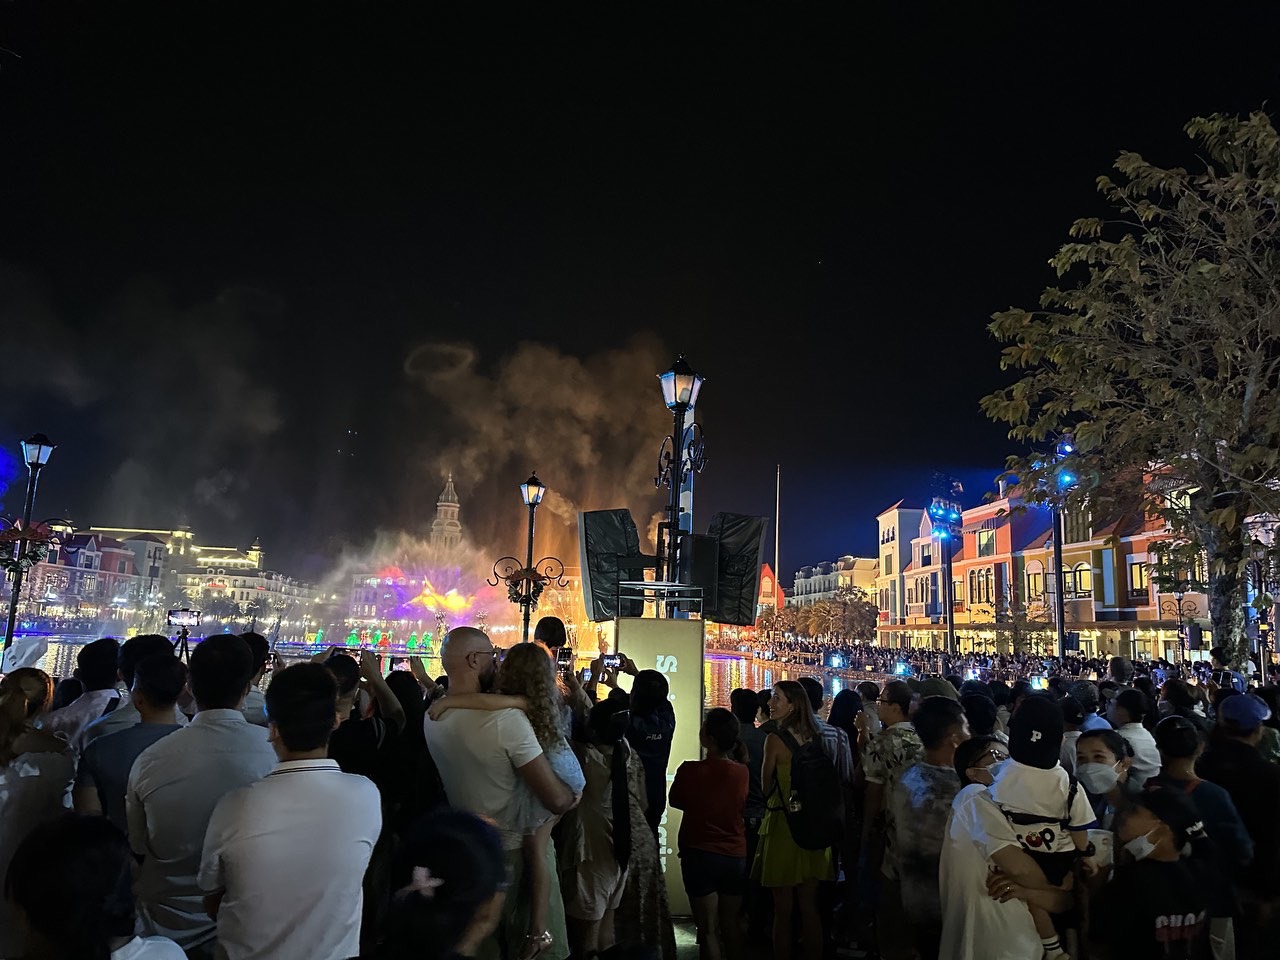 Xung quanh Hồ Tình yêu tập trung rất đông người dân và du khách đợi khoảnh khắc bắn pháo hoa chào mừng năm mới. Ảnh Hữu Tuấn